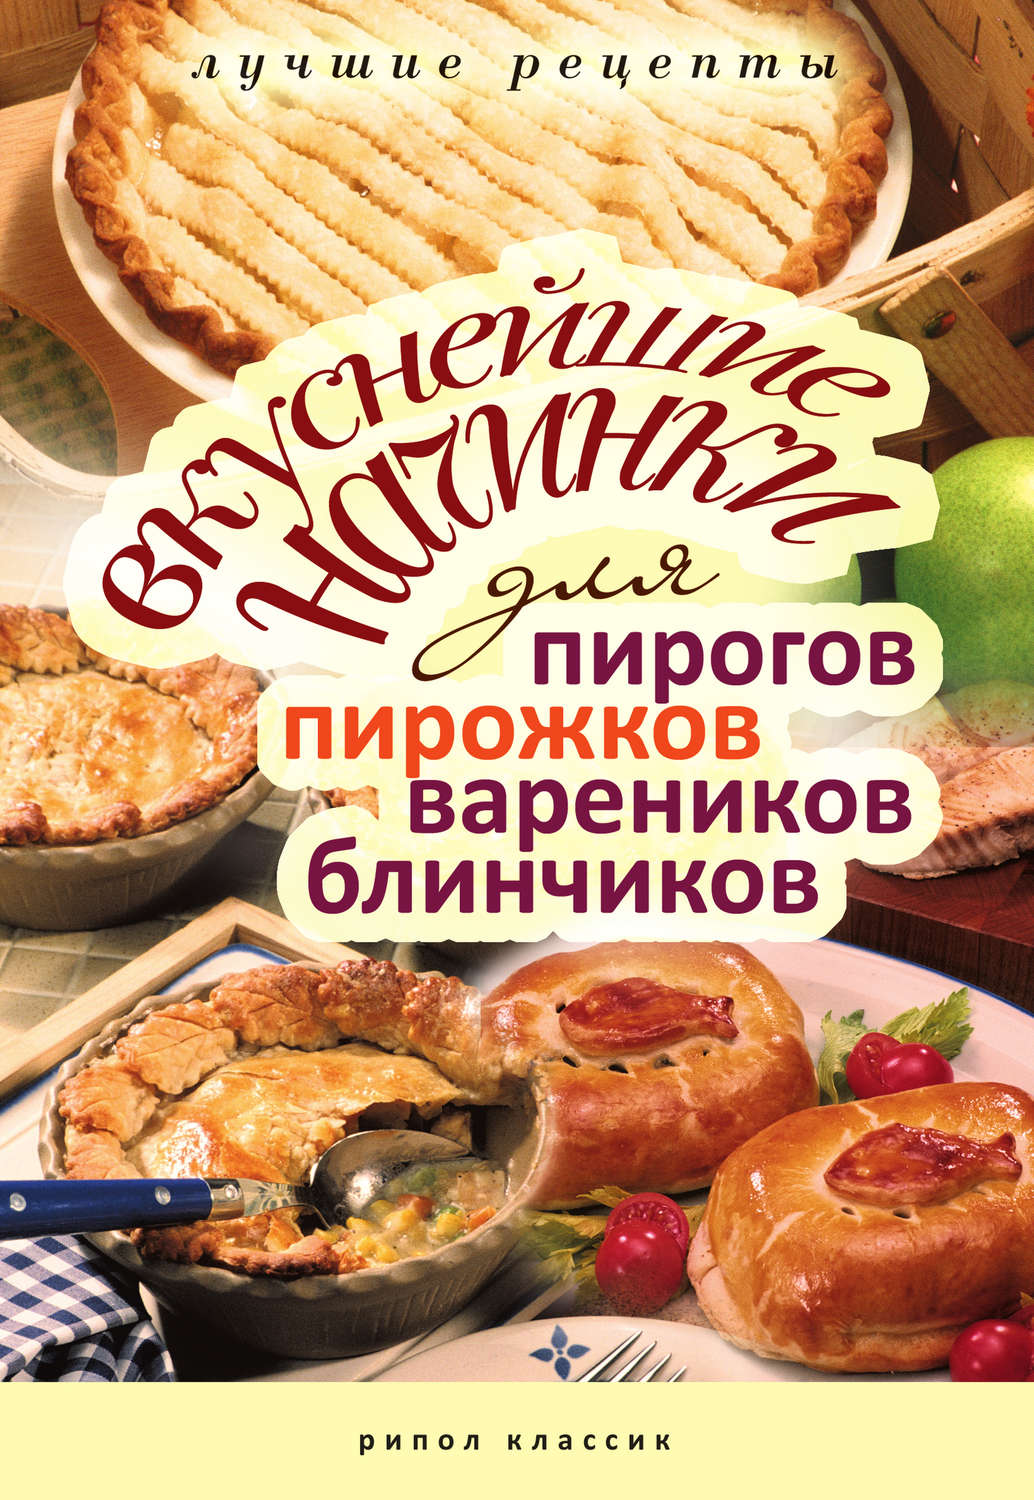 Топ 20 начинок для пирогов, автор 4 кулинарных книг рекомендует